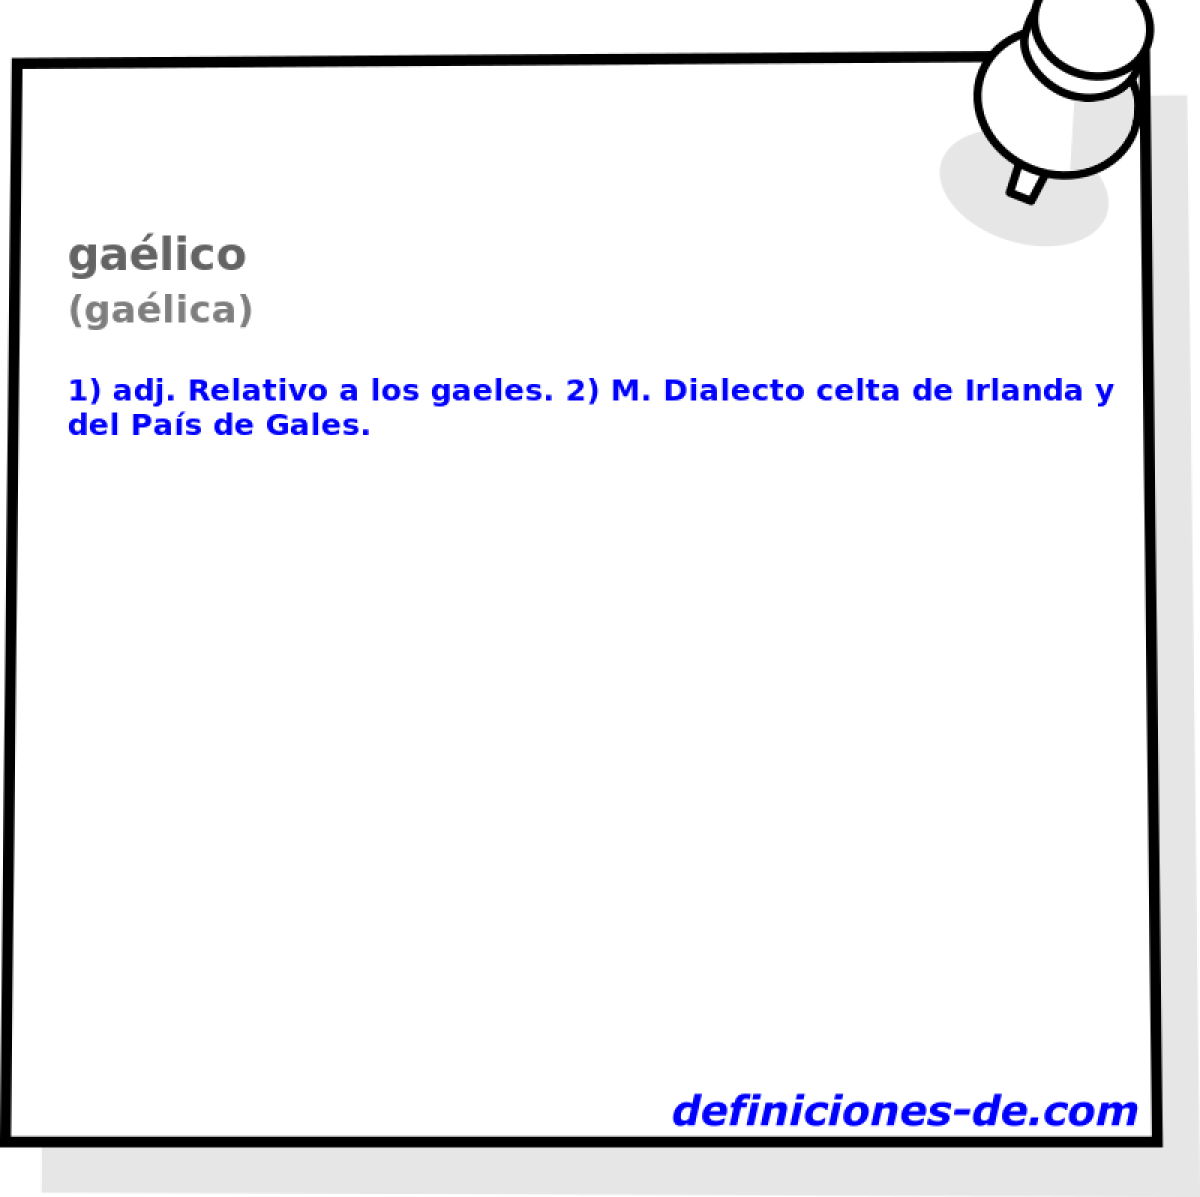 galico (galica)